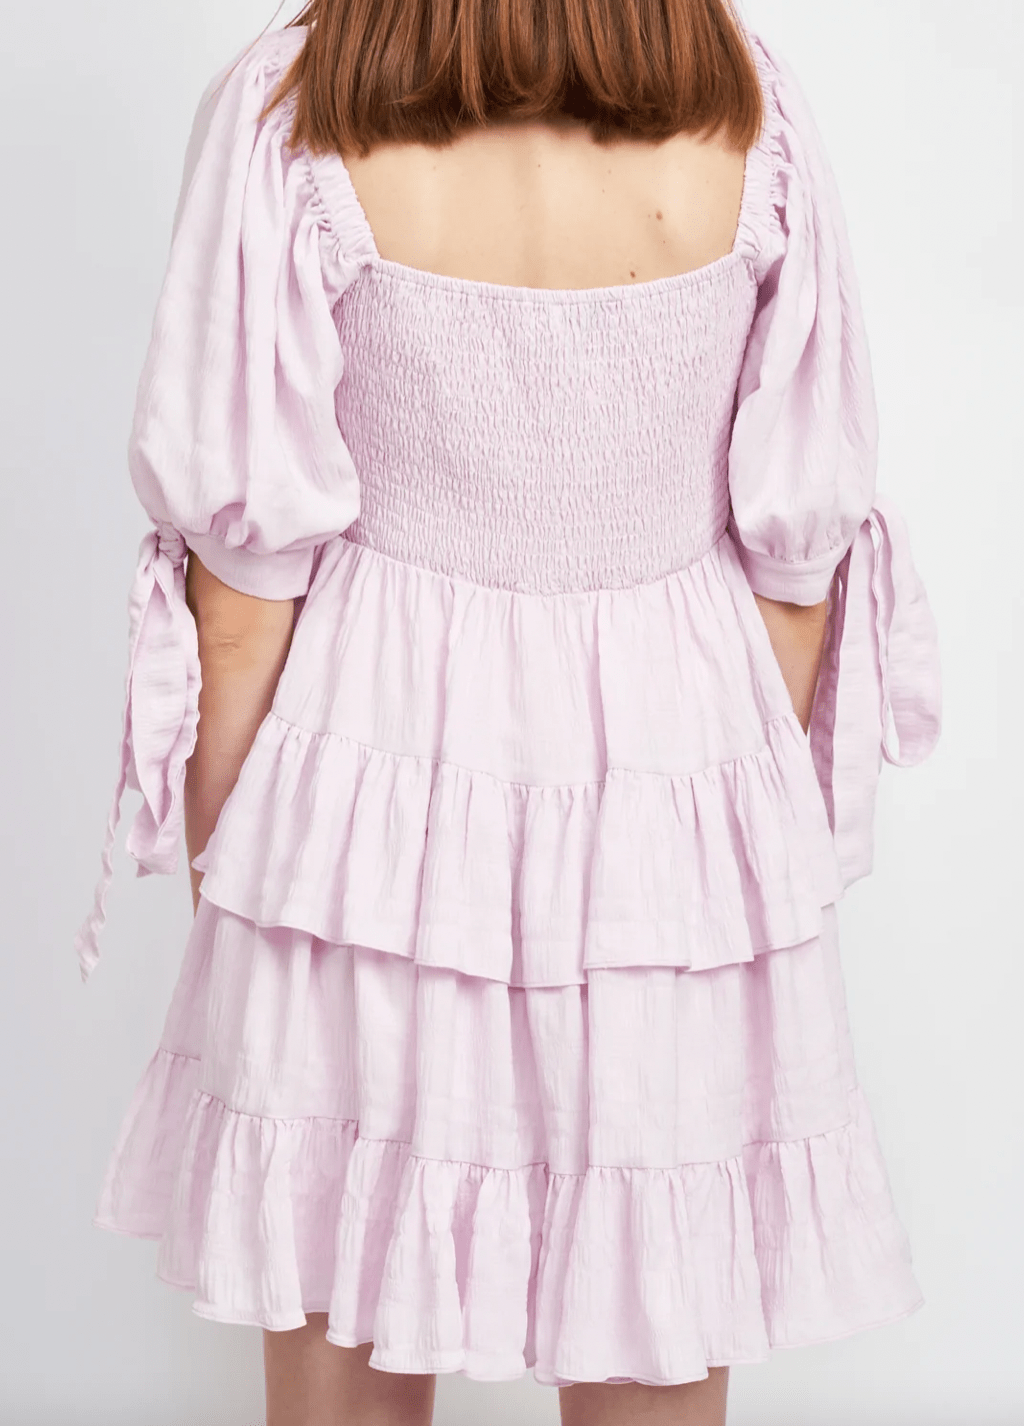 En Saison Adara Mini Dress in Lavender - Estilo Boutique